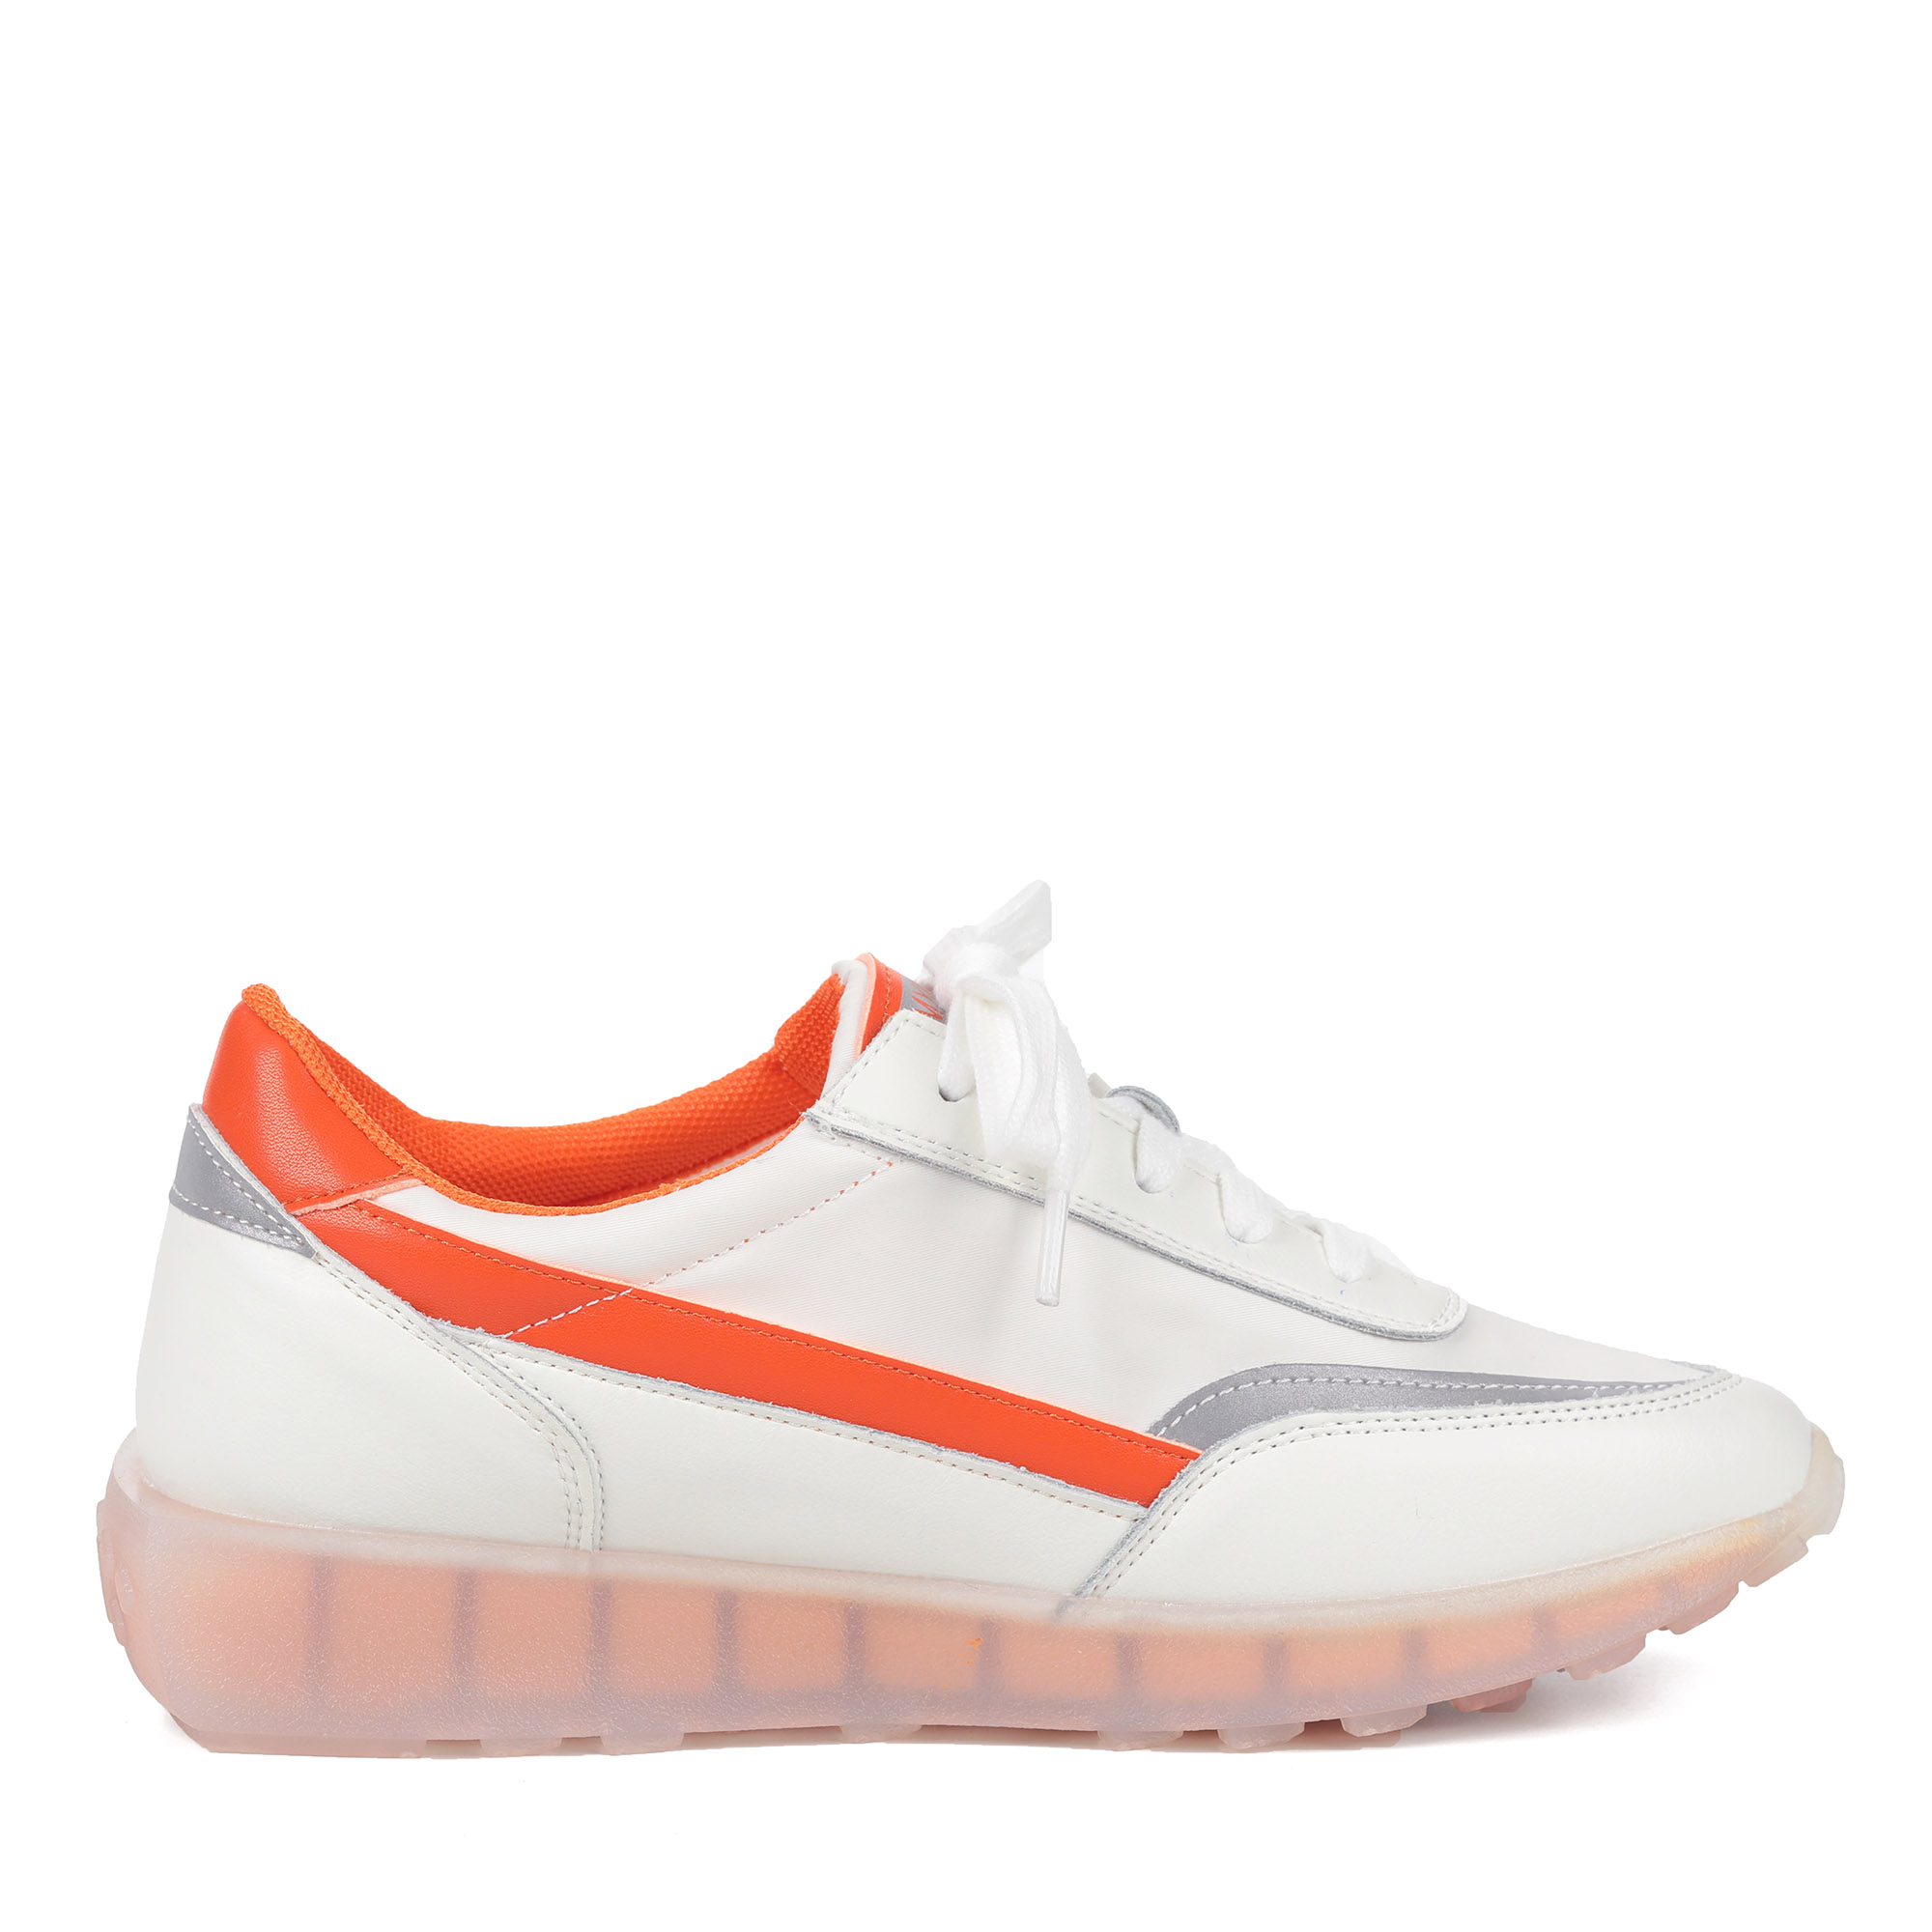 Бело-оранжевые кроссовки из комбинированных материалов от Respect-shoes